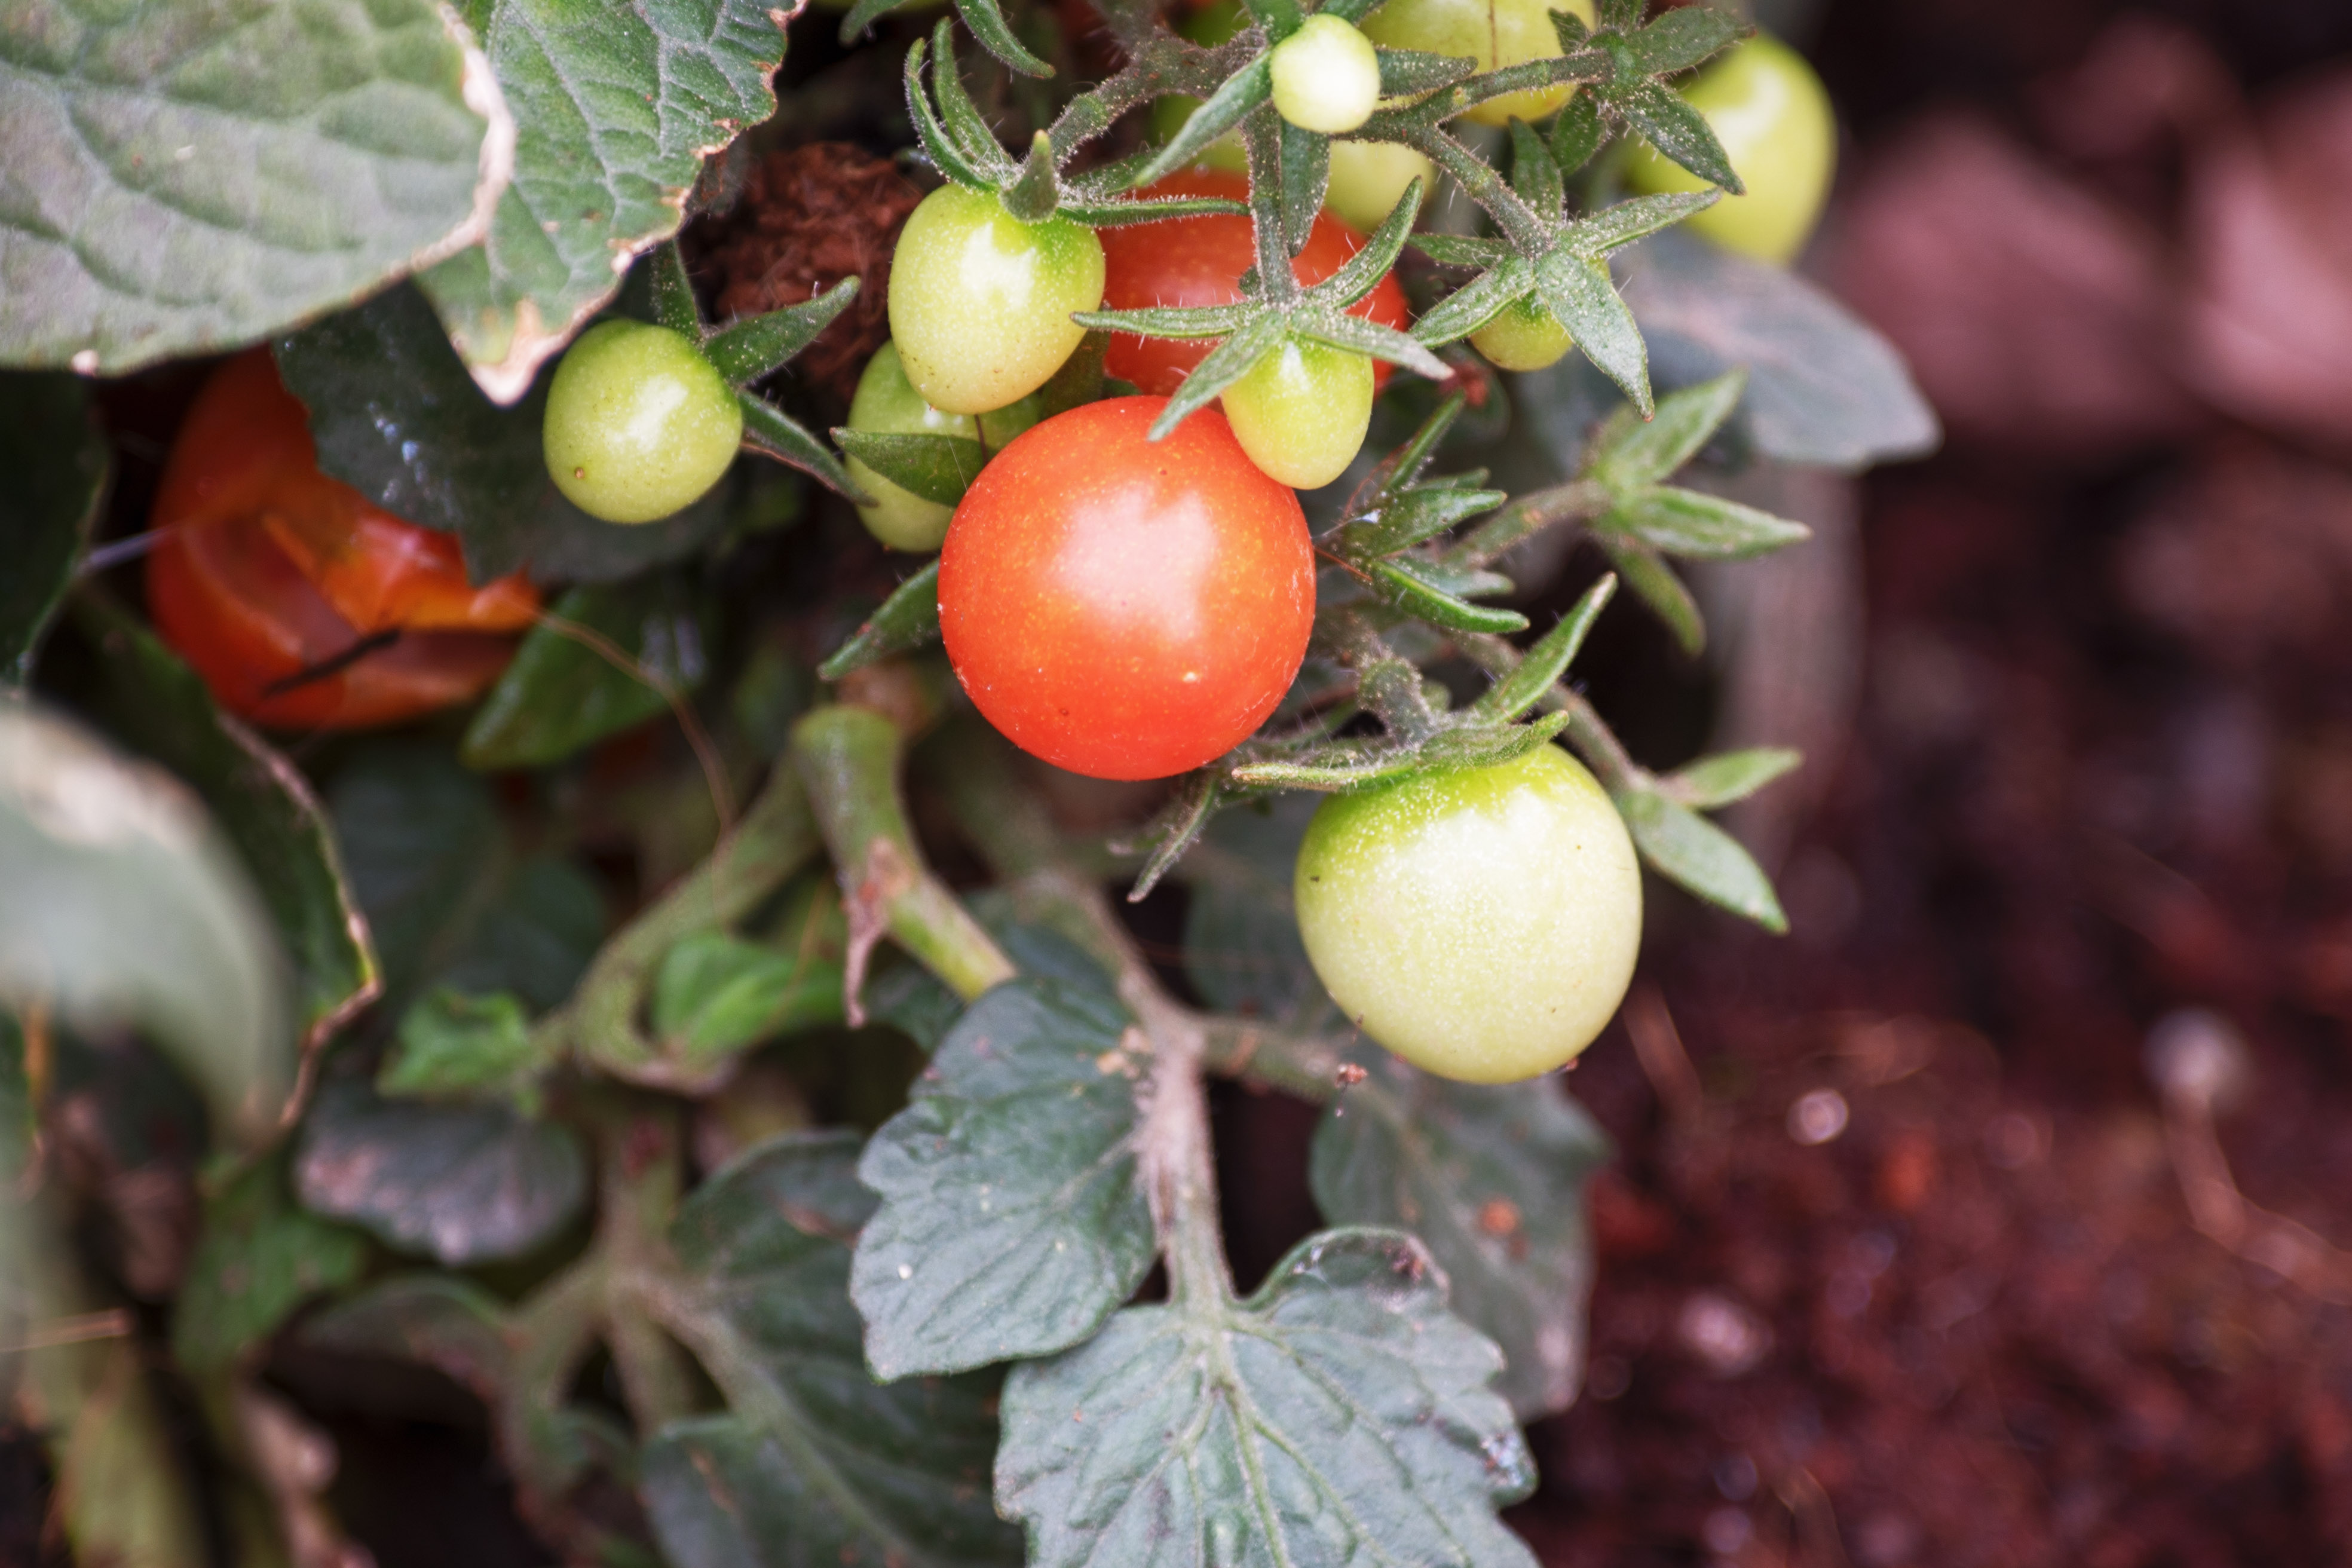 文字:芳草地 在植物园的植物普及园去拍了一组小番茄,而且是野生的